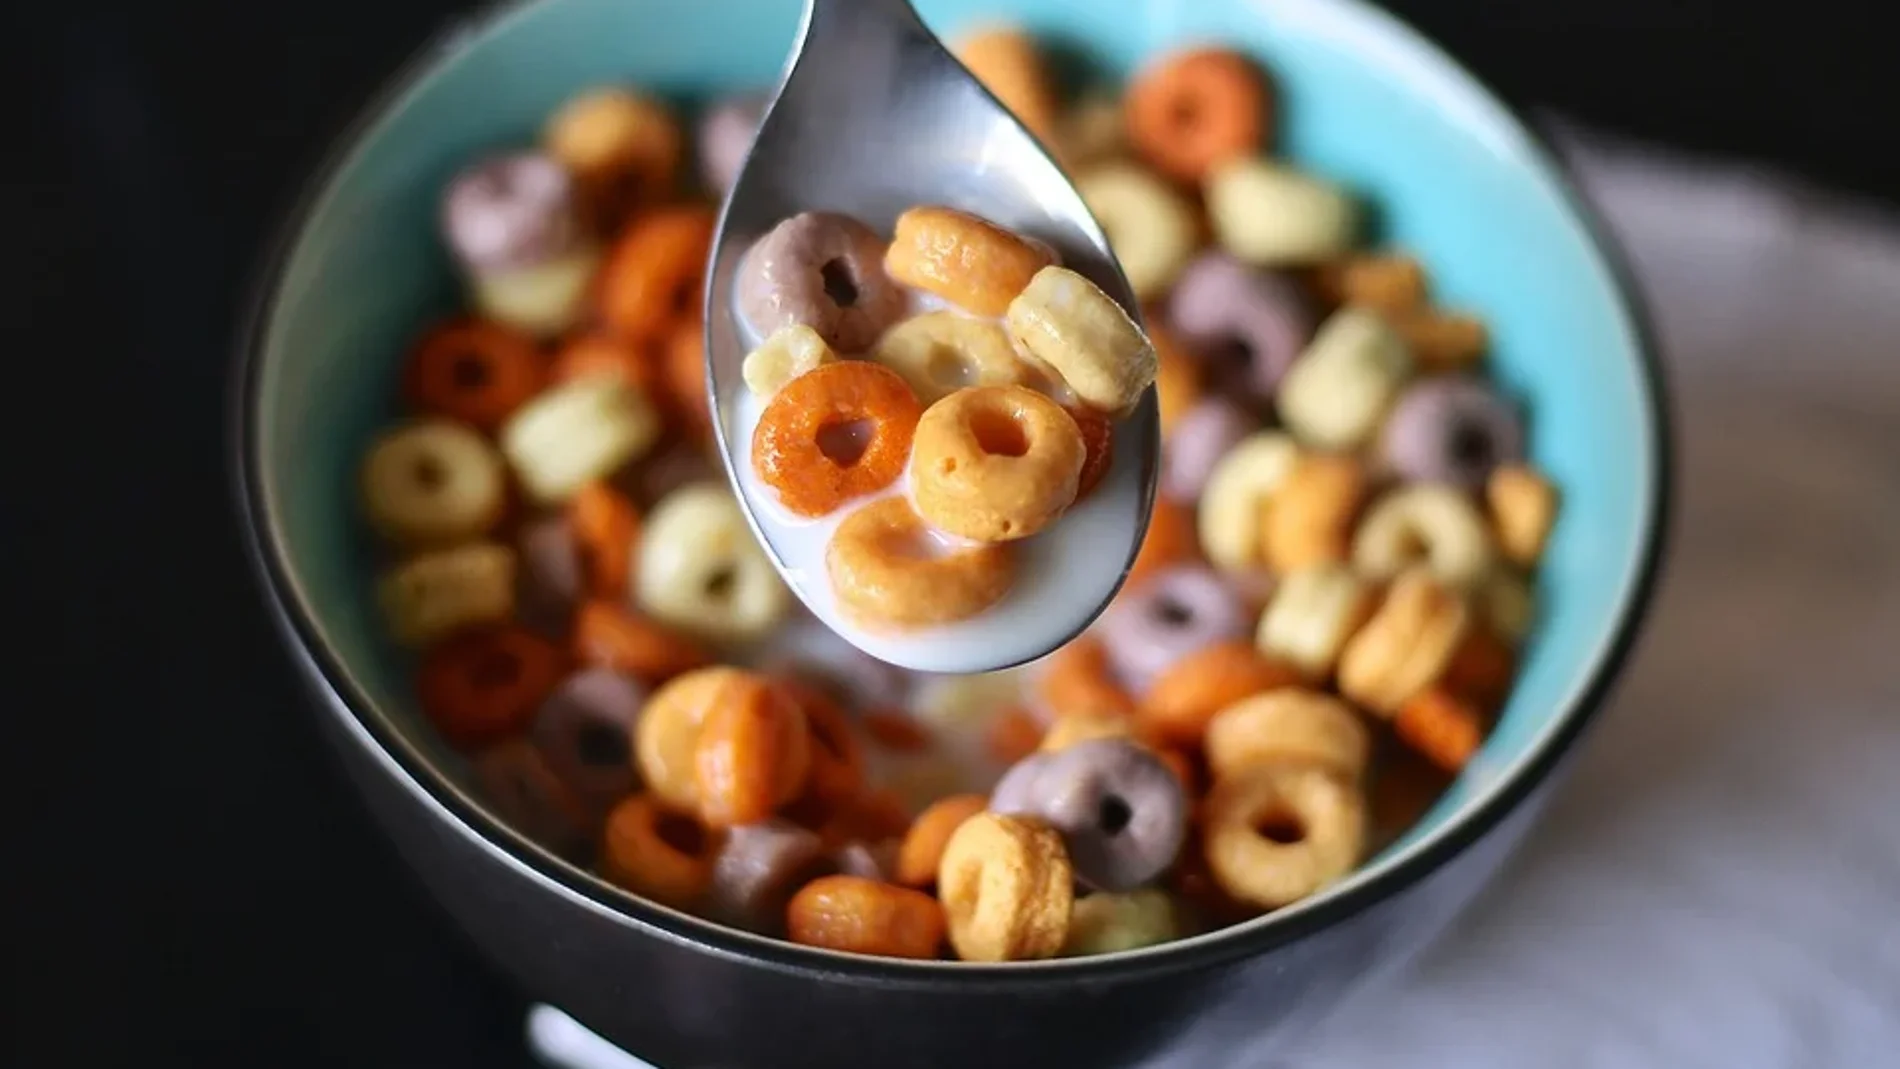 Cereales de desayuno y granolas azucaradas – Ambos suelen tener un alto contenido de azúcar. Una alternativa sería optar por ejemplo por los copos de avena, cereales de espelta integral, copos de cebada o hacer sus propias granolas en casa.